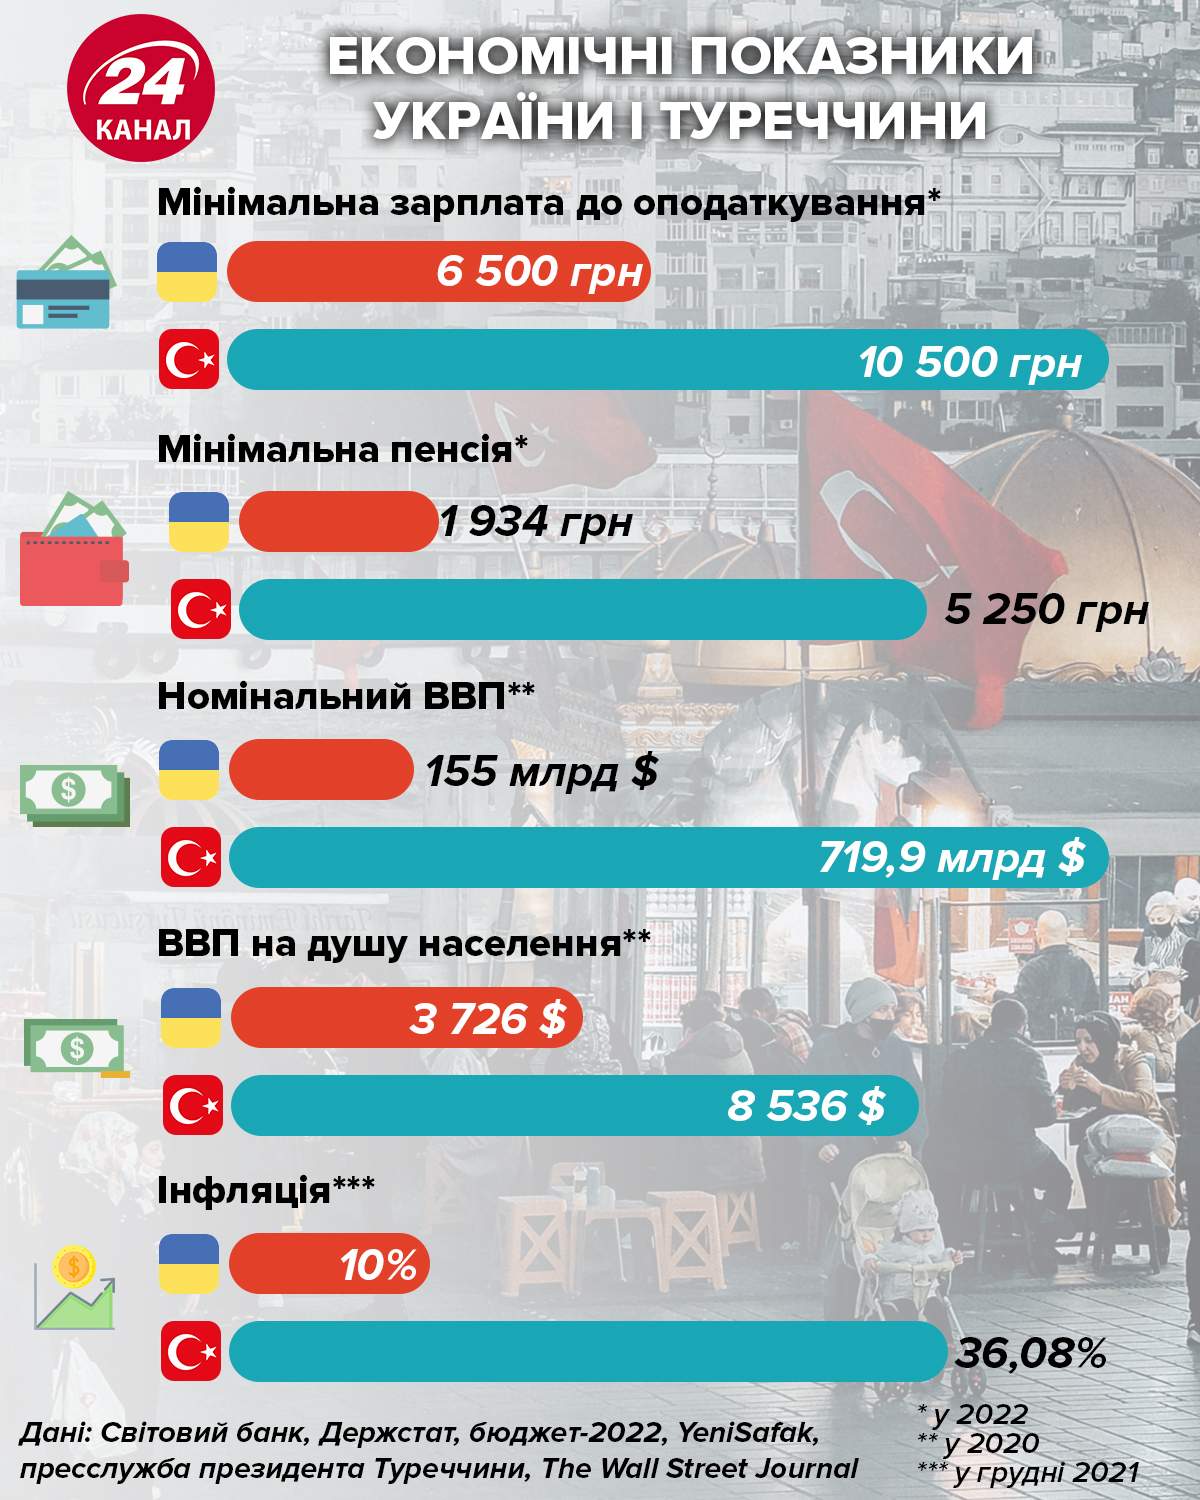 Богаче ли турки украинцев (зарплаты, пенсии, ВВП)